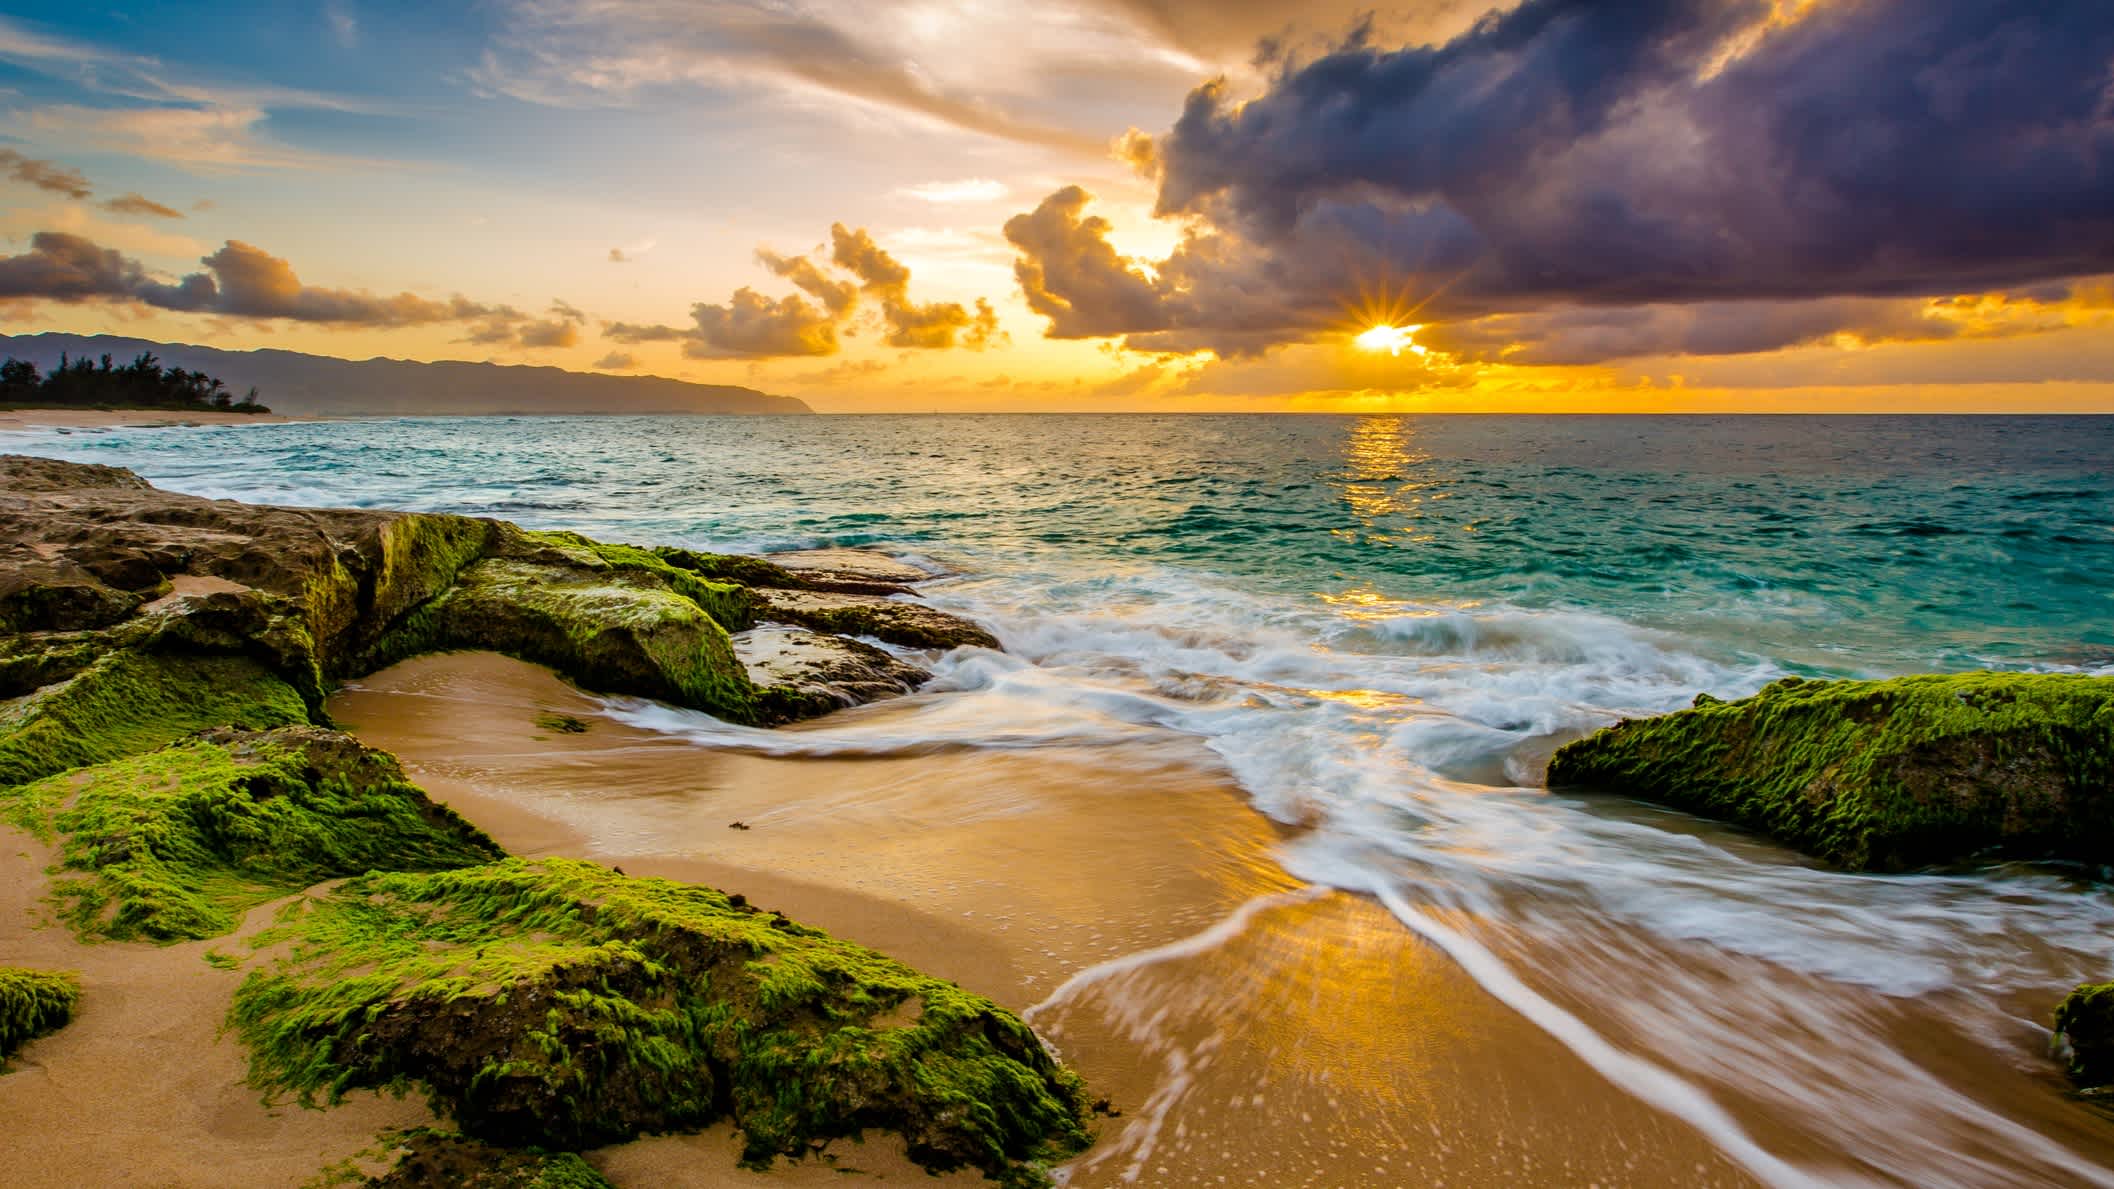 Ein Sonnenuntergang entlang der Küste von Oahus Nordküste in Hawaii, USA. 

